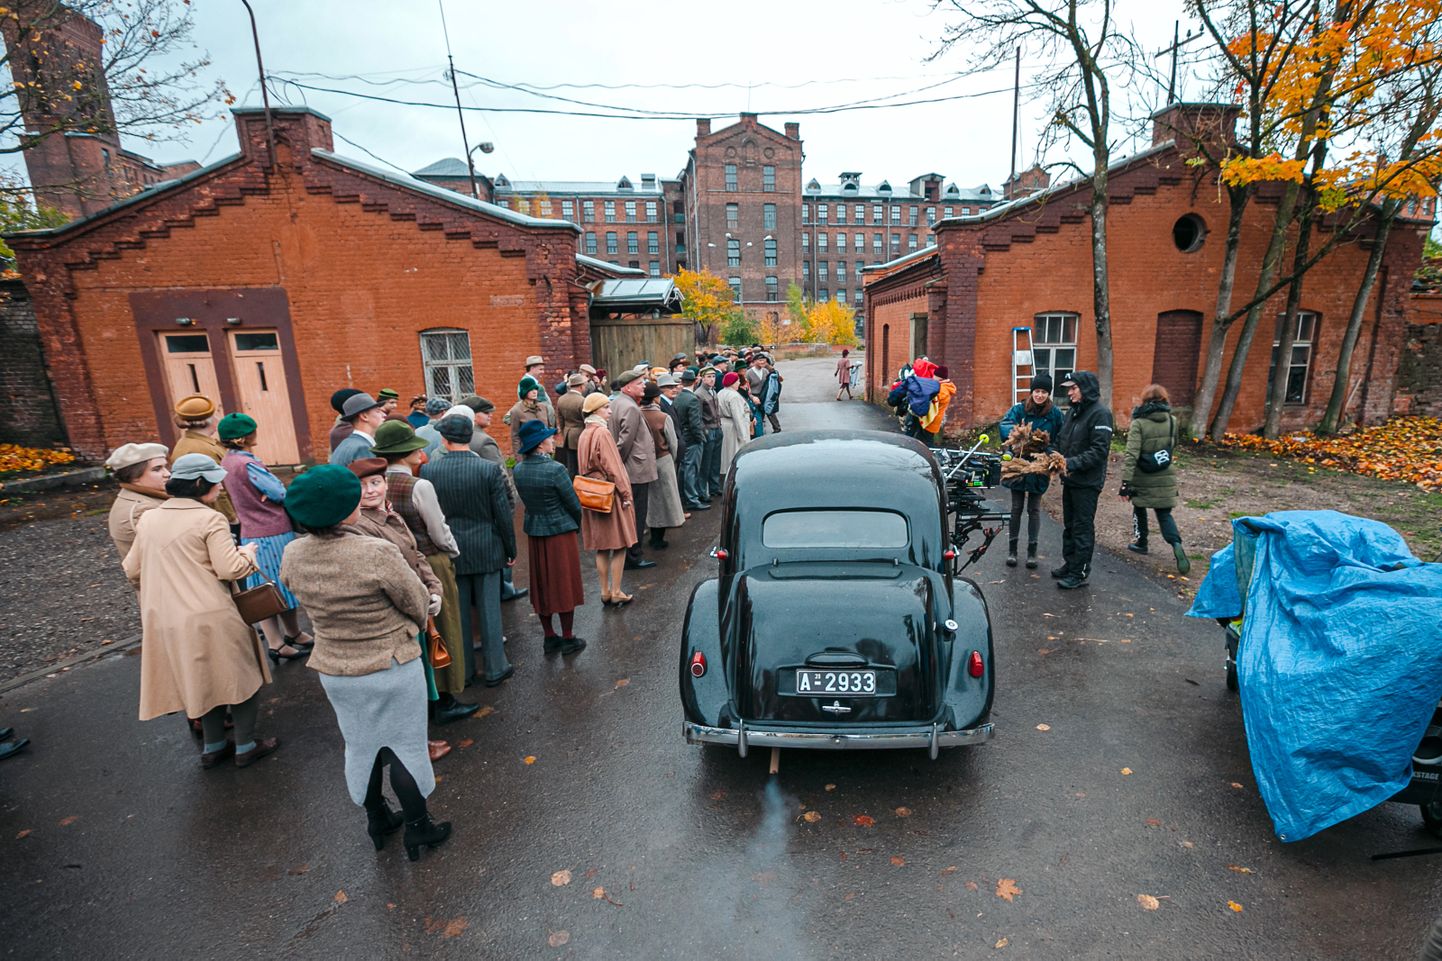 Läinud sügisel toimusid Narvas Kreenholmis spioonipõneviku "O2" võtted, kus filmiti ka massistseene. Sellest kahe miljoni eurose eelarvega filmist rahastas Viru filmifond 80 000 eurot.